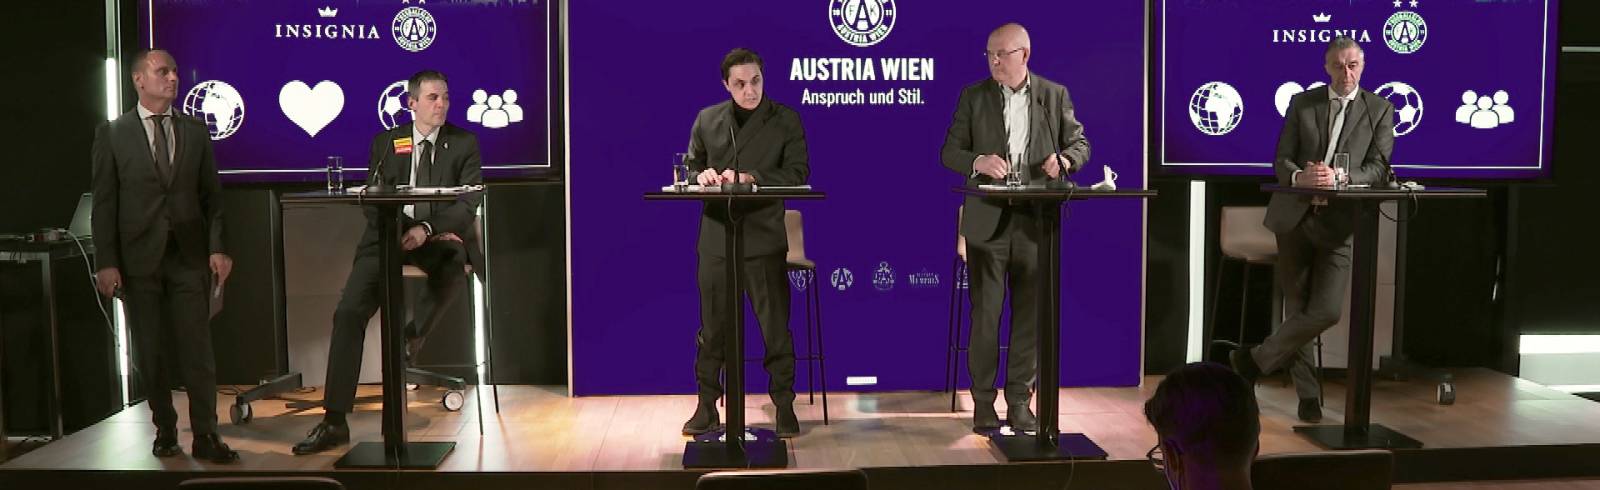 Austria Wien: Strategischer Partner steigt ein